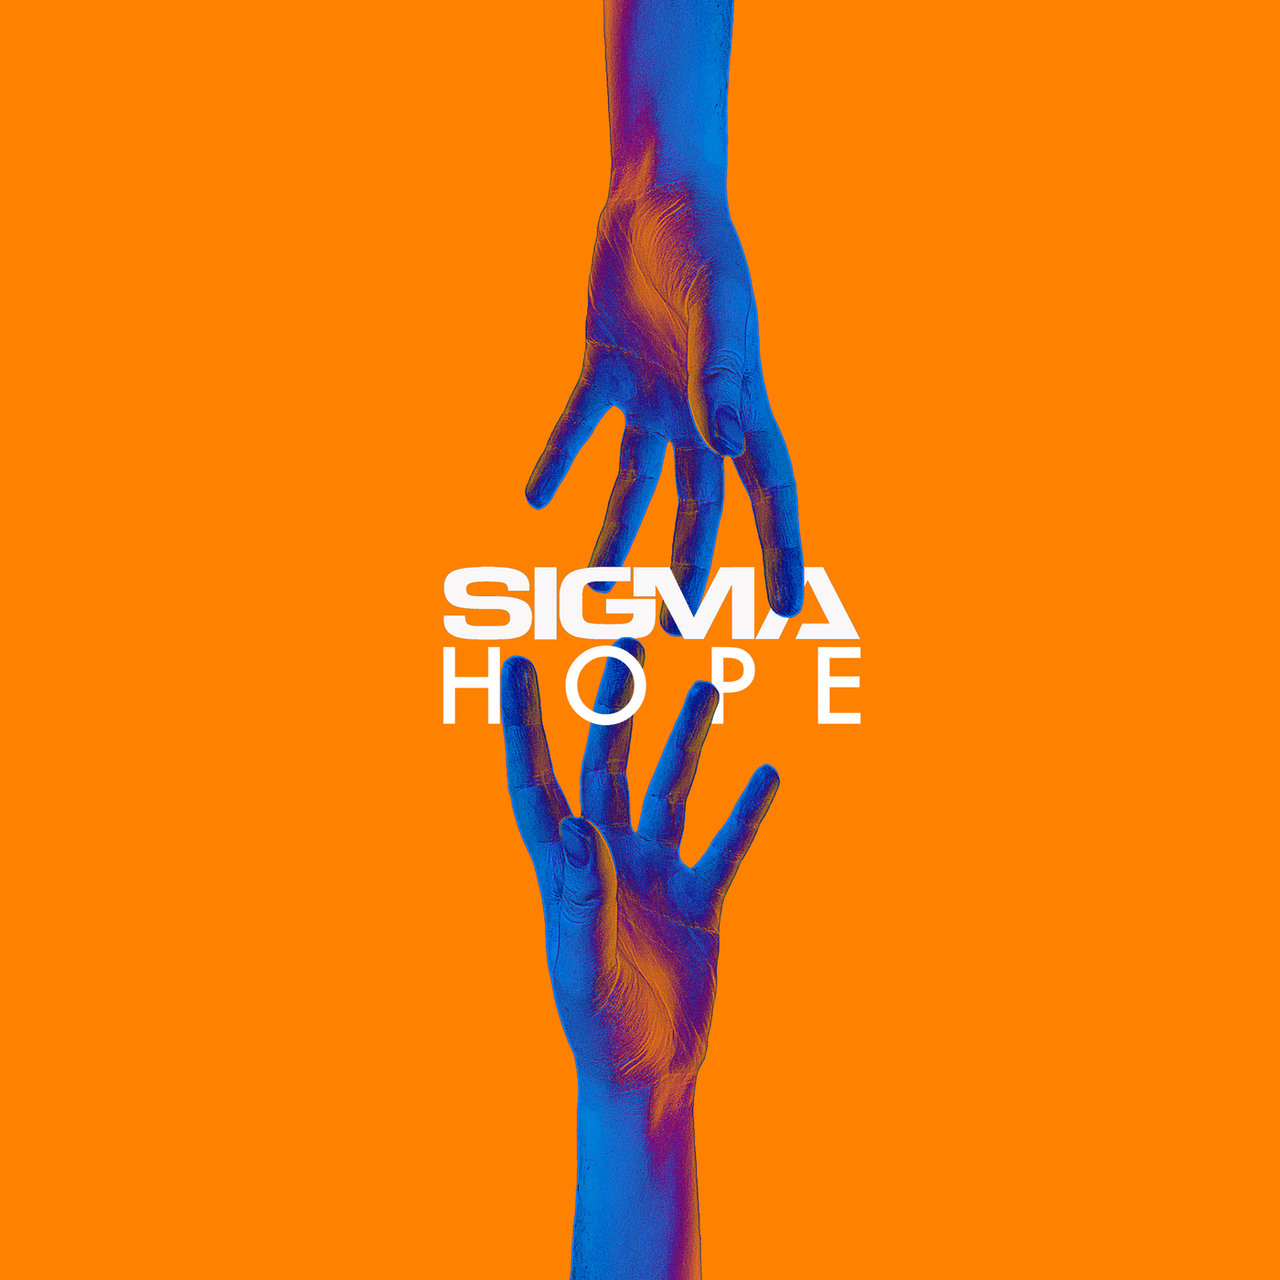 Sigma Hope cover artwork